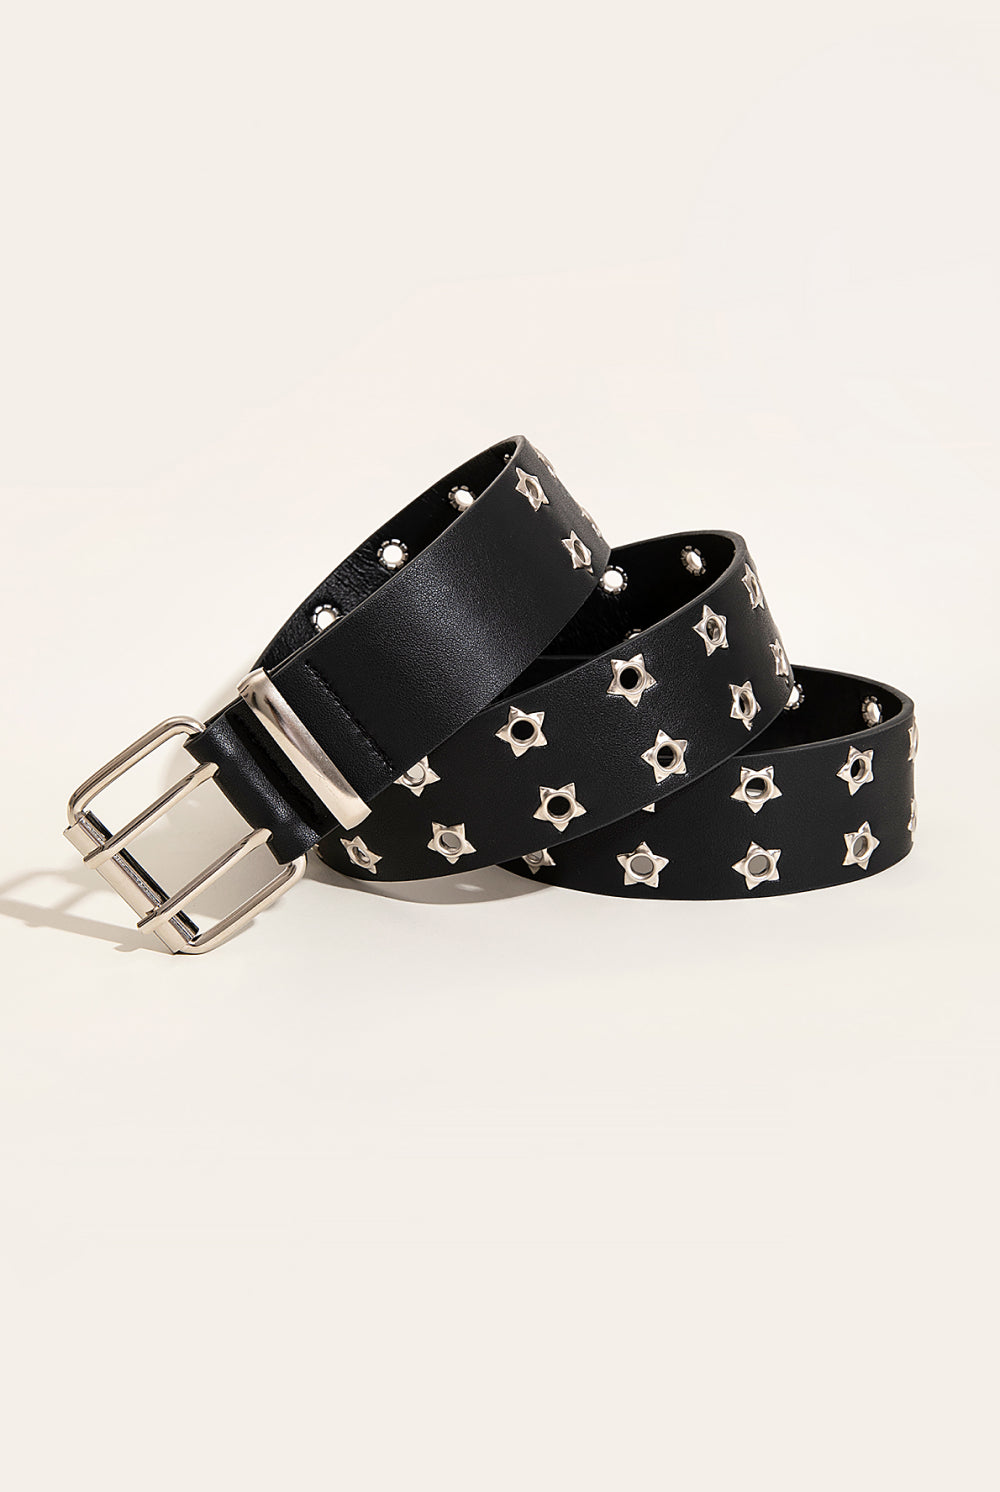 Beige Double Row Star Grommet PU Leather Belt